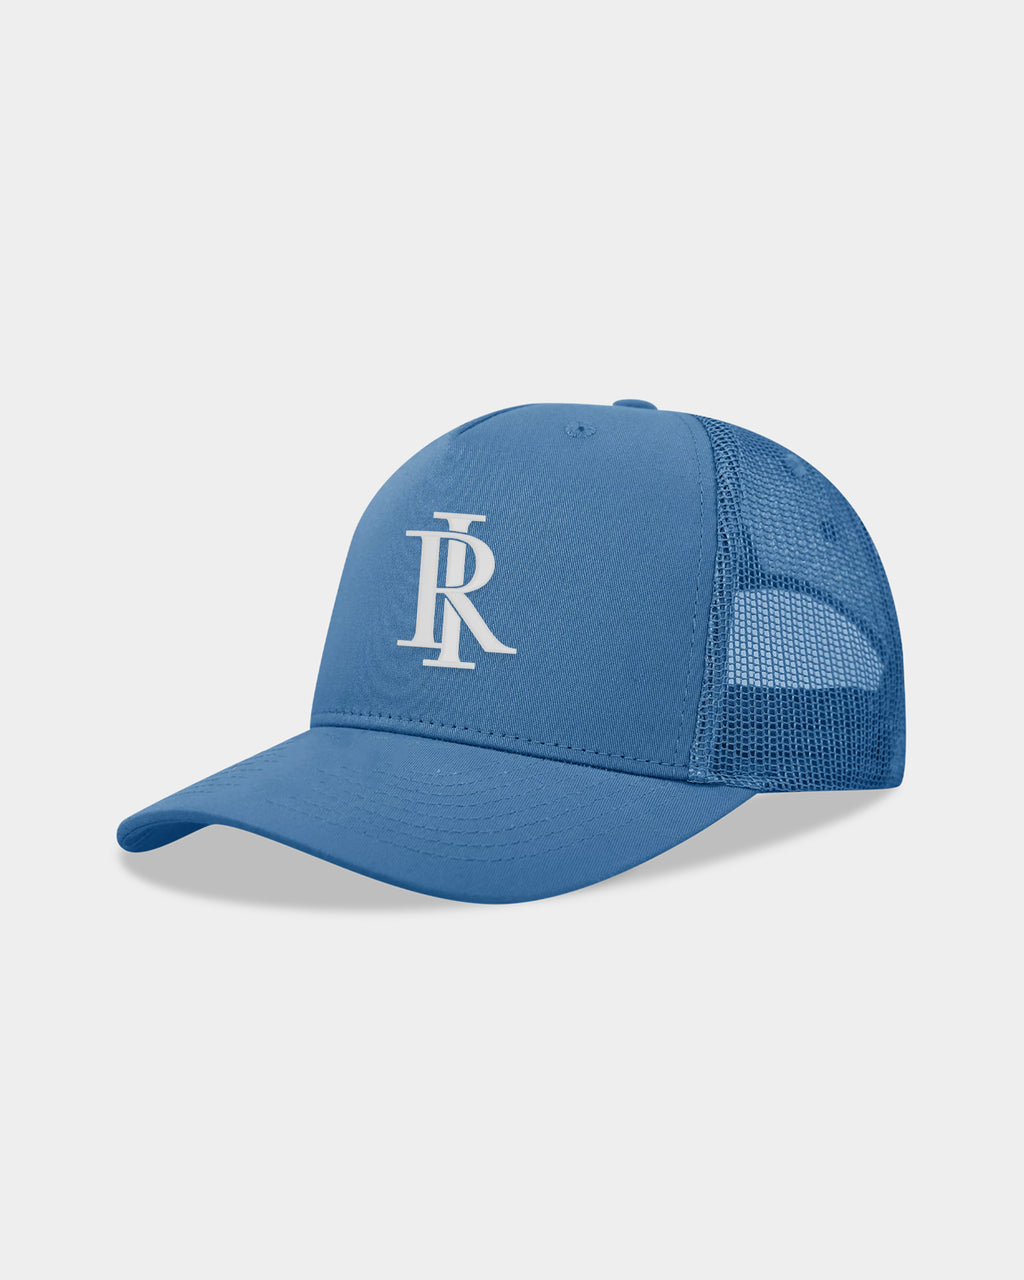 Monogram Trucker Hat - Light Blue